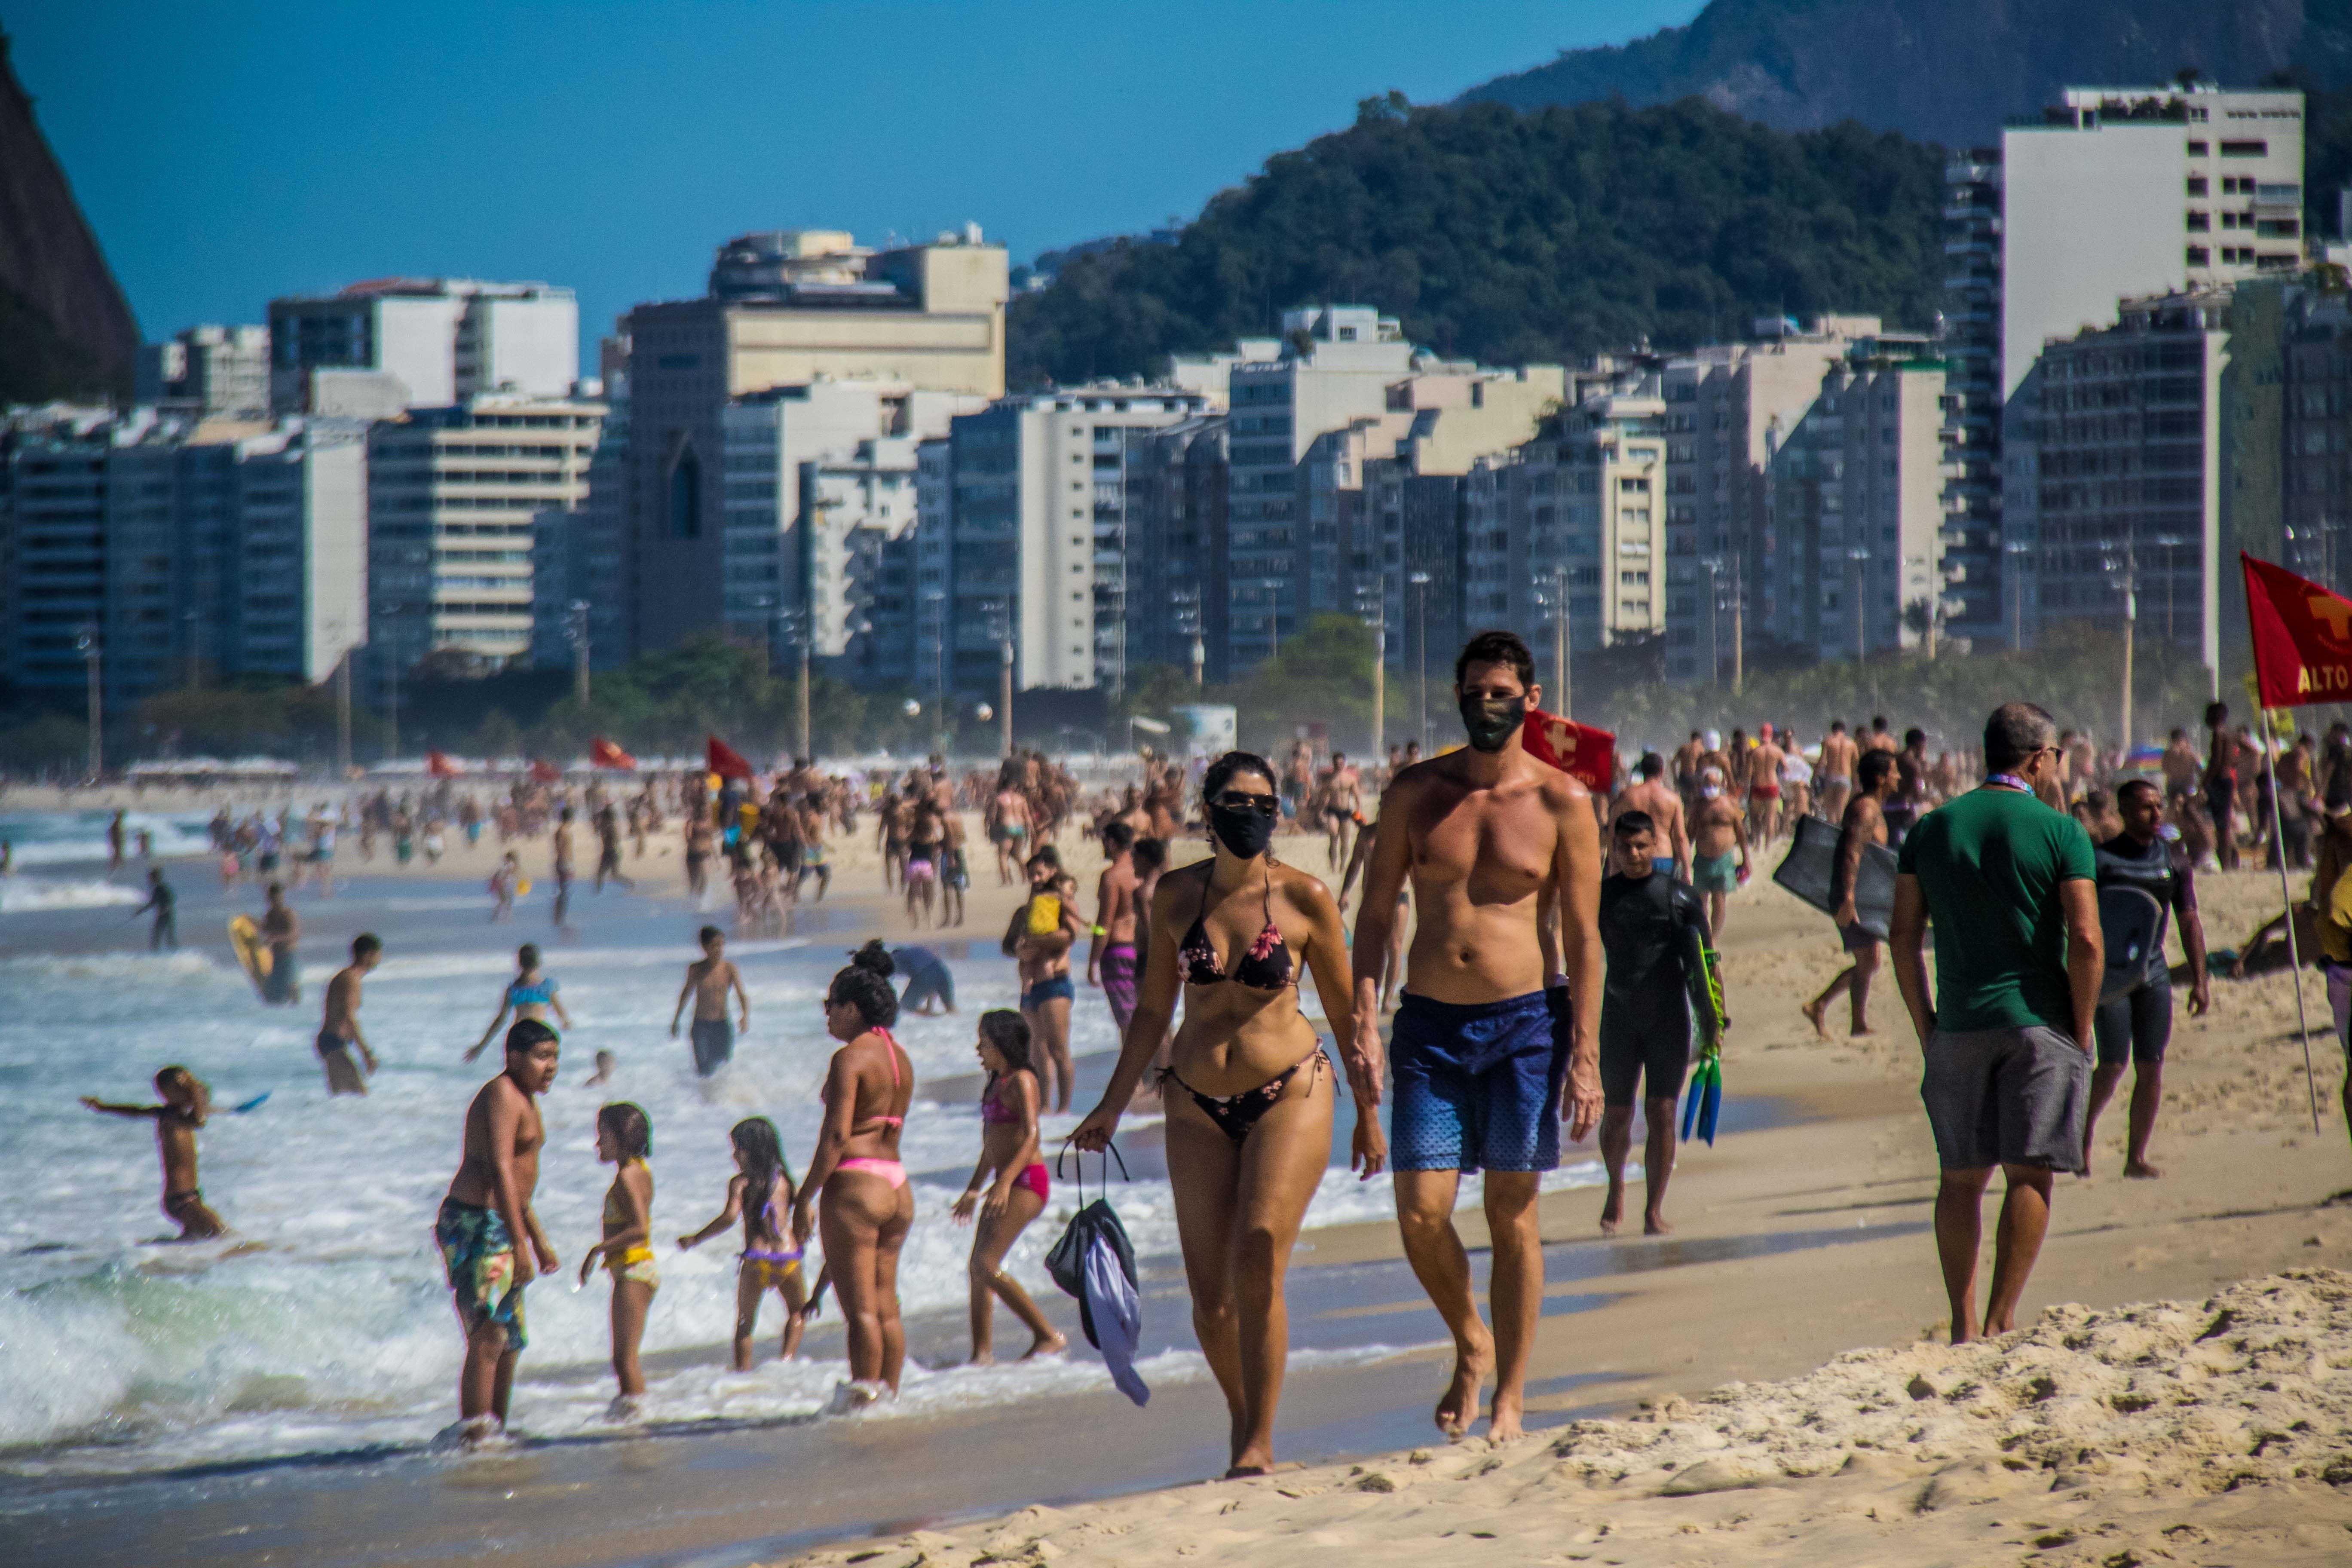 18/09/2020 Una pareja camina por las playa de Leme, en el sur de Río de Janeiro. POLITICA LATINOAMÉRICA INTERNACIONAL ELLAN LUSTOSA / ZUMA PRESS / CONTACTOPHOTO 